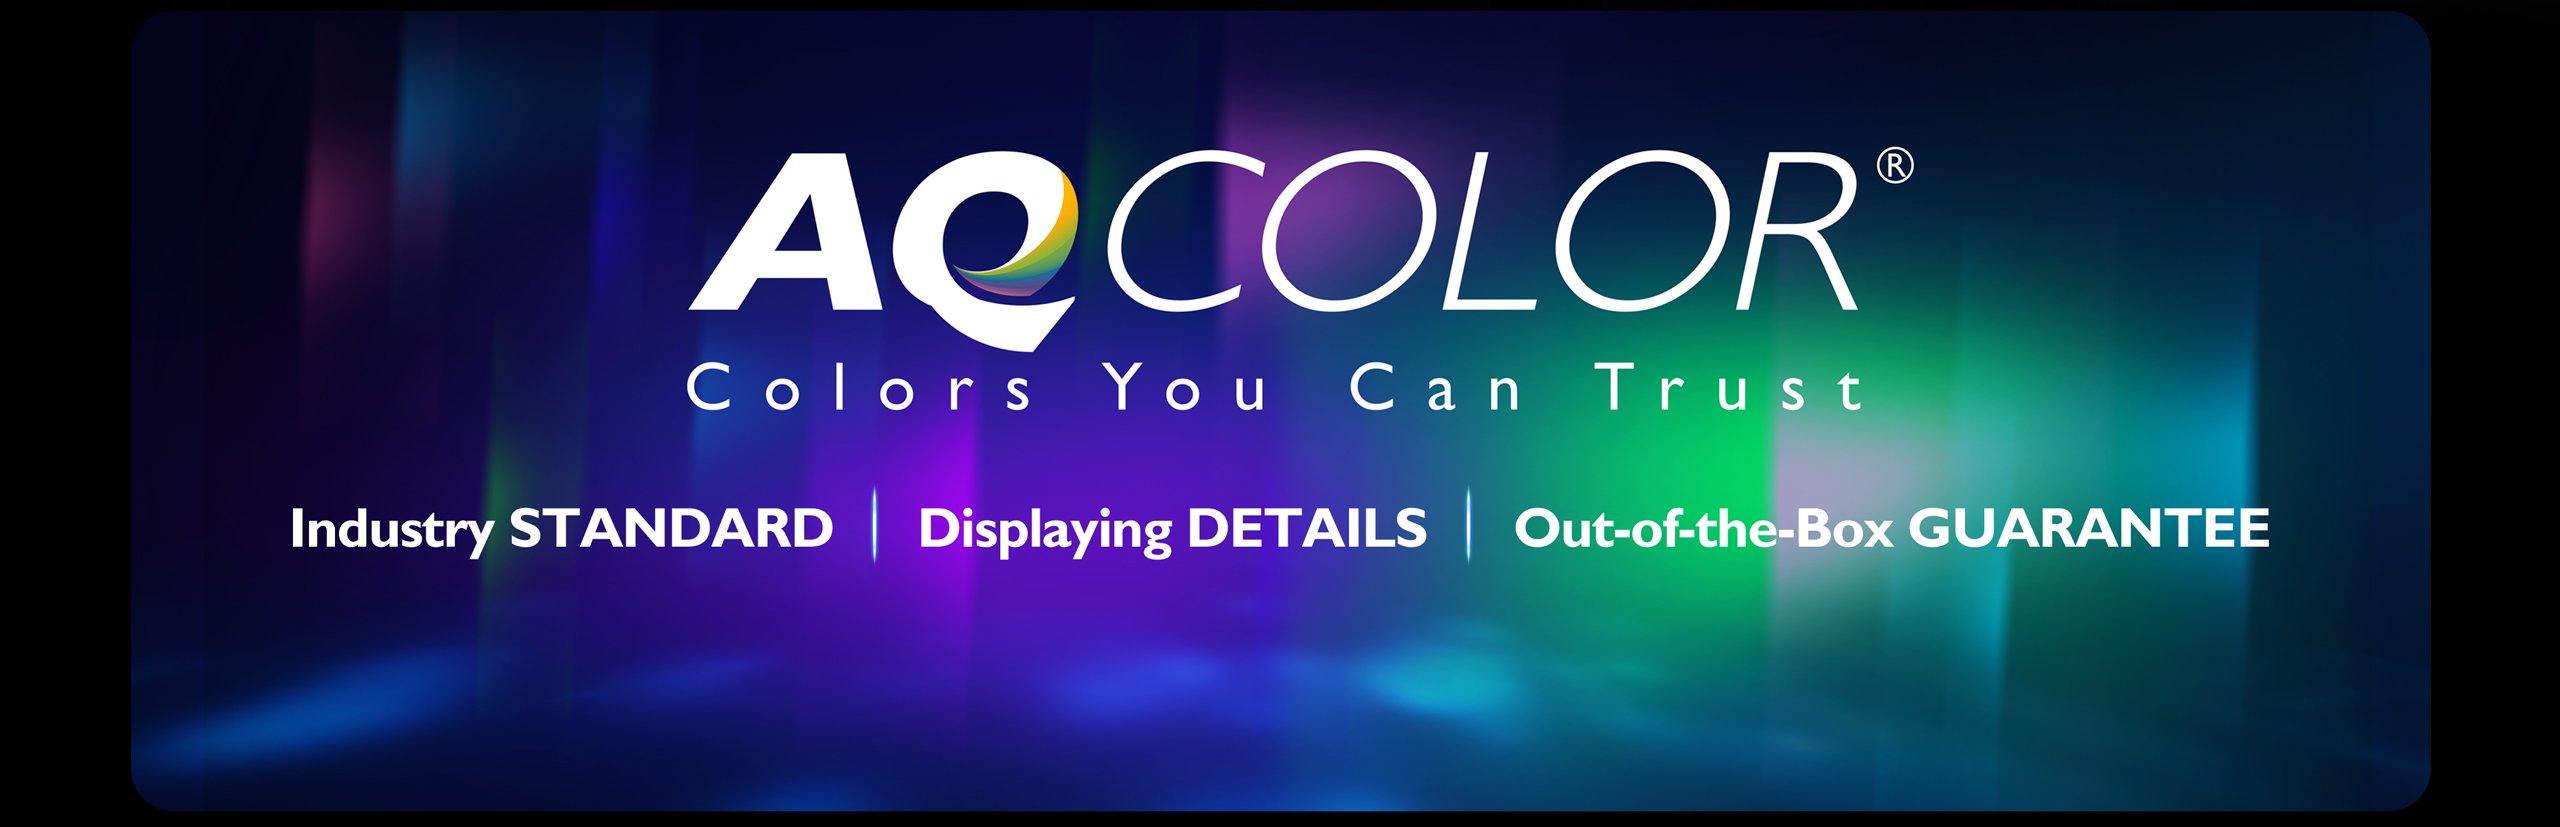 เทคโนโลยี aqcolor มาพร้อมมาตรฐานอุตสาหกรรม